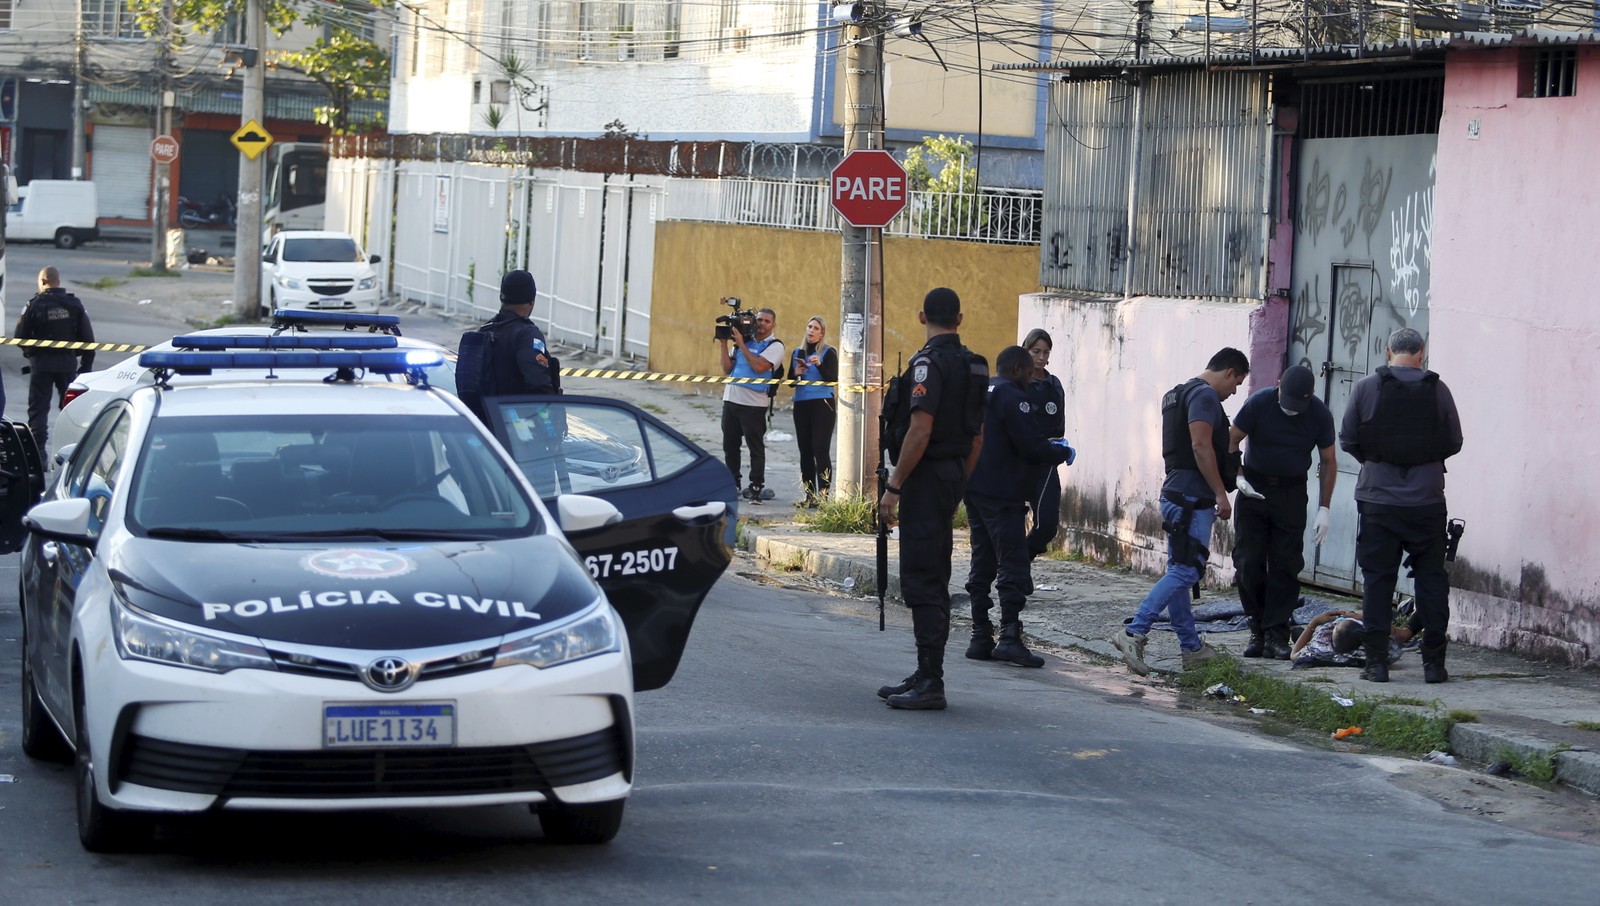 Uma moradora morreu na Vila Cruzeiro, na Penha, durante a operação integrada — Foto: Fabiano Rocha / Agência O Globo